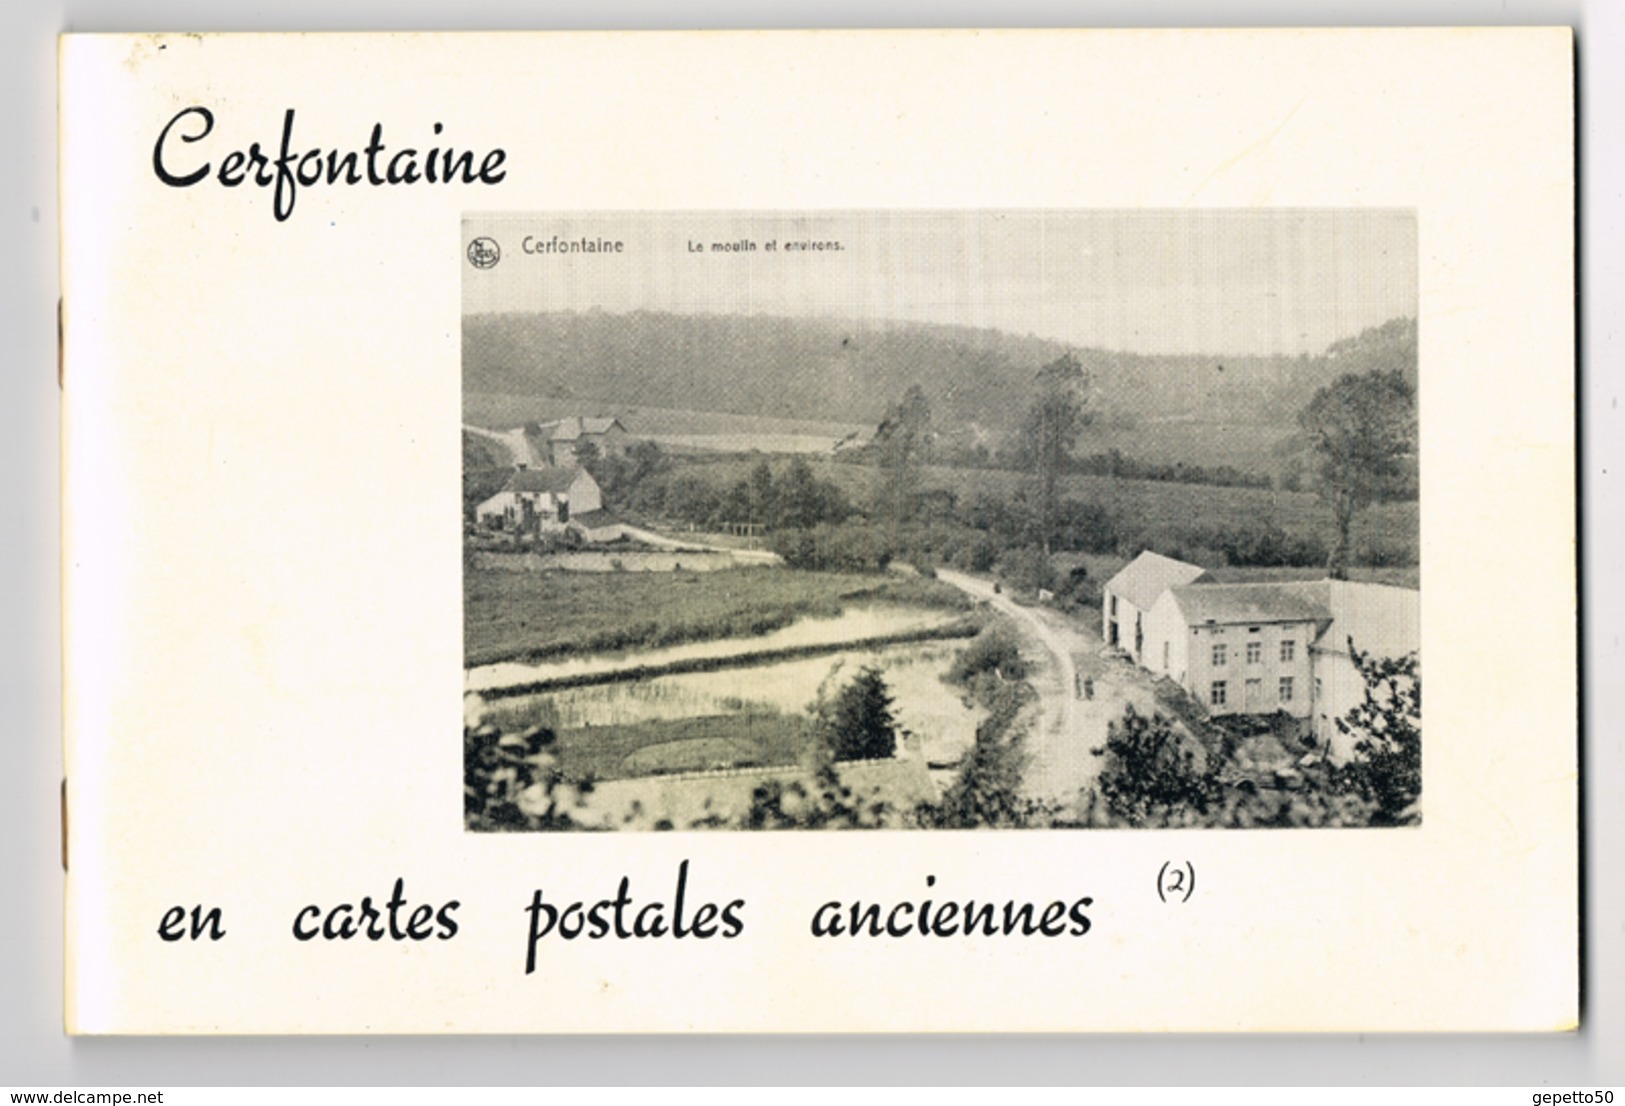 Cerfontaine Livre (n°2) De CP AnciennesEd Musée De Cerfontaine Repro De 70 Cartes - Libri & Cataloghi